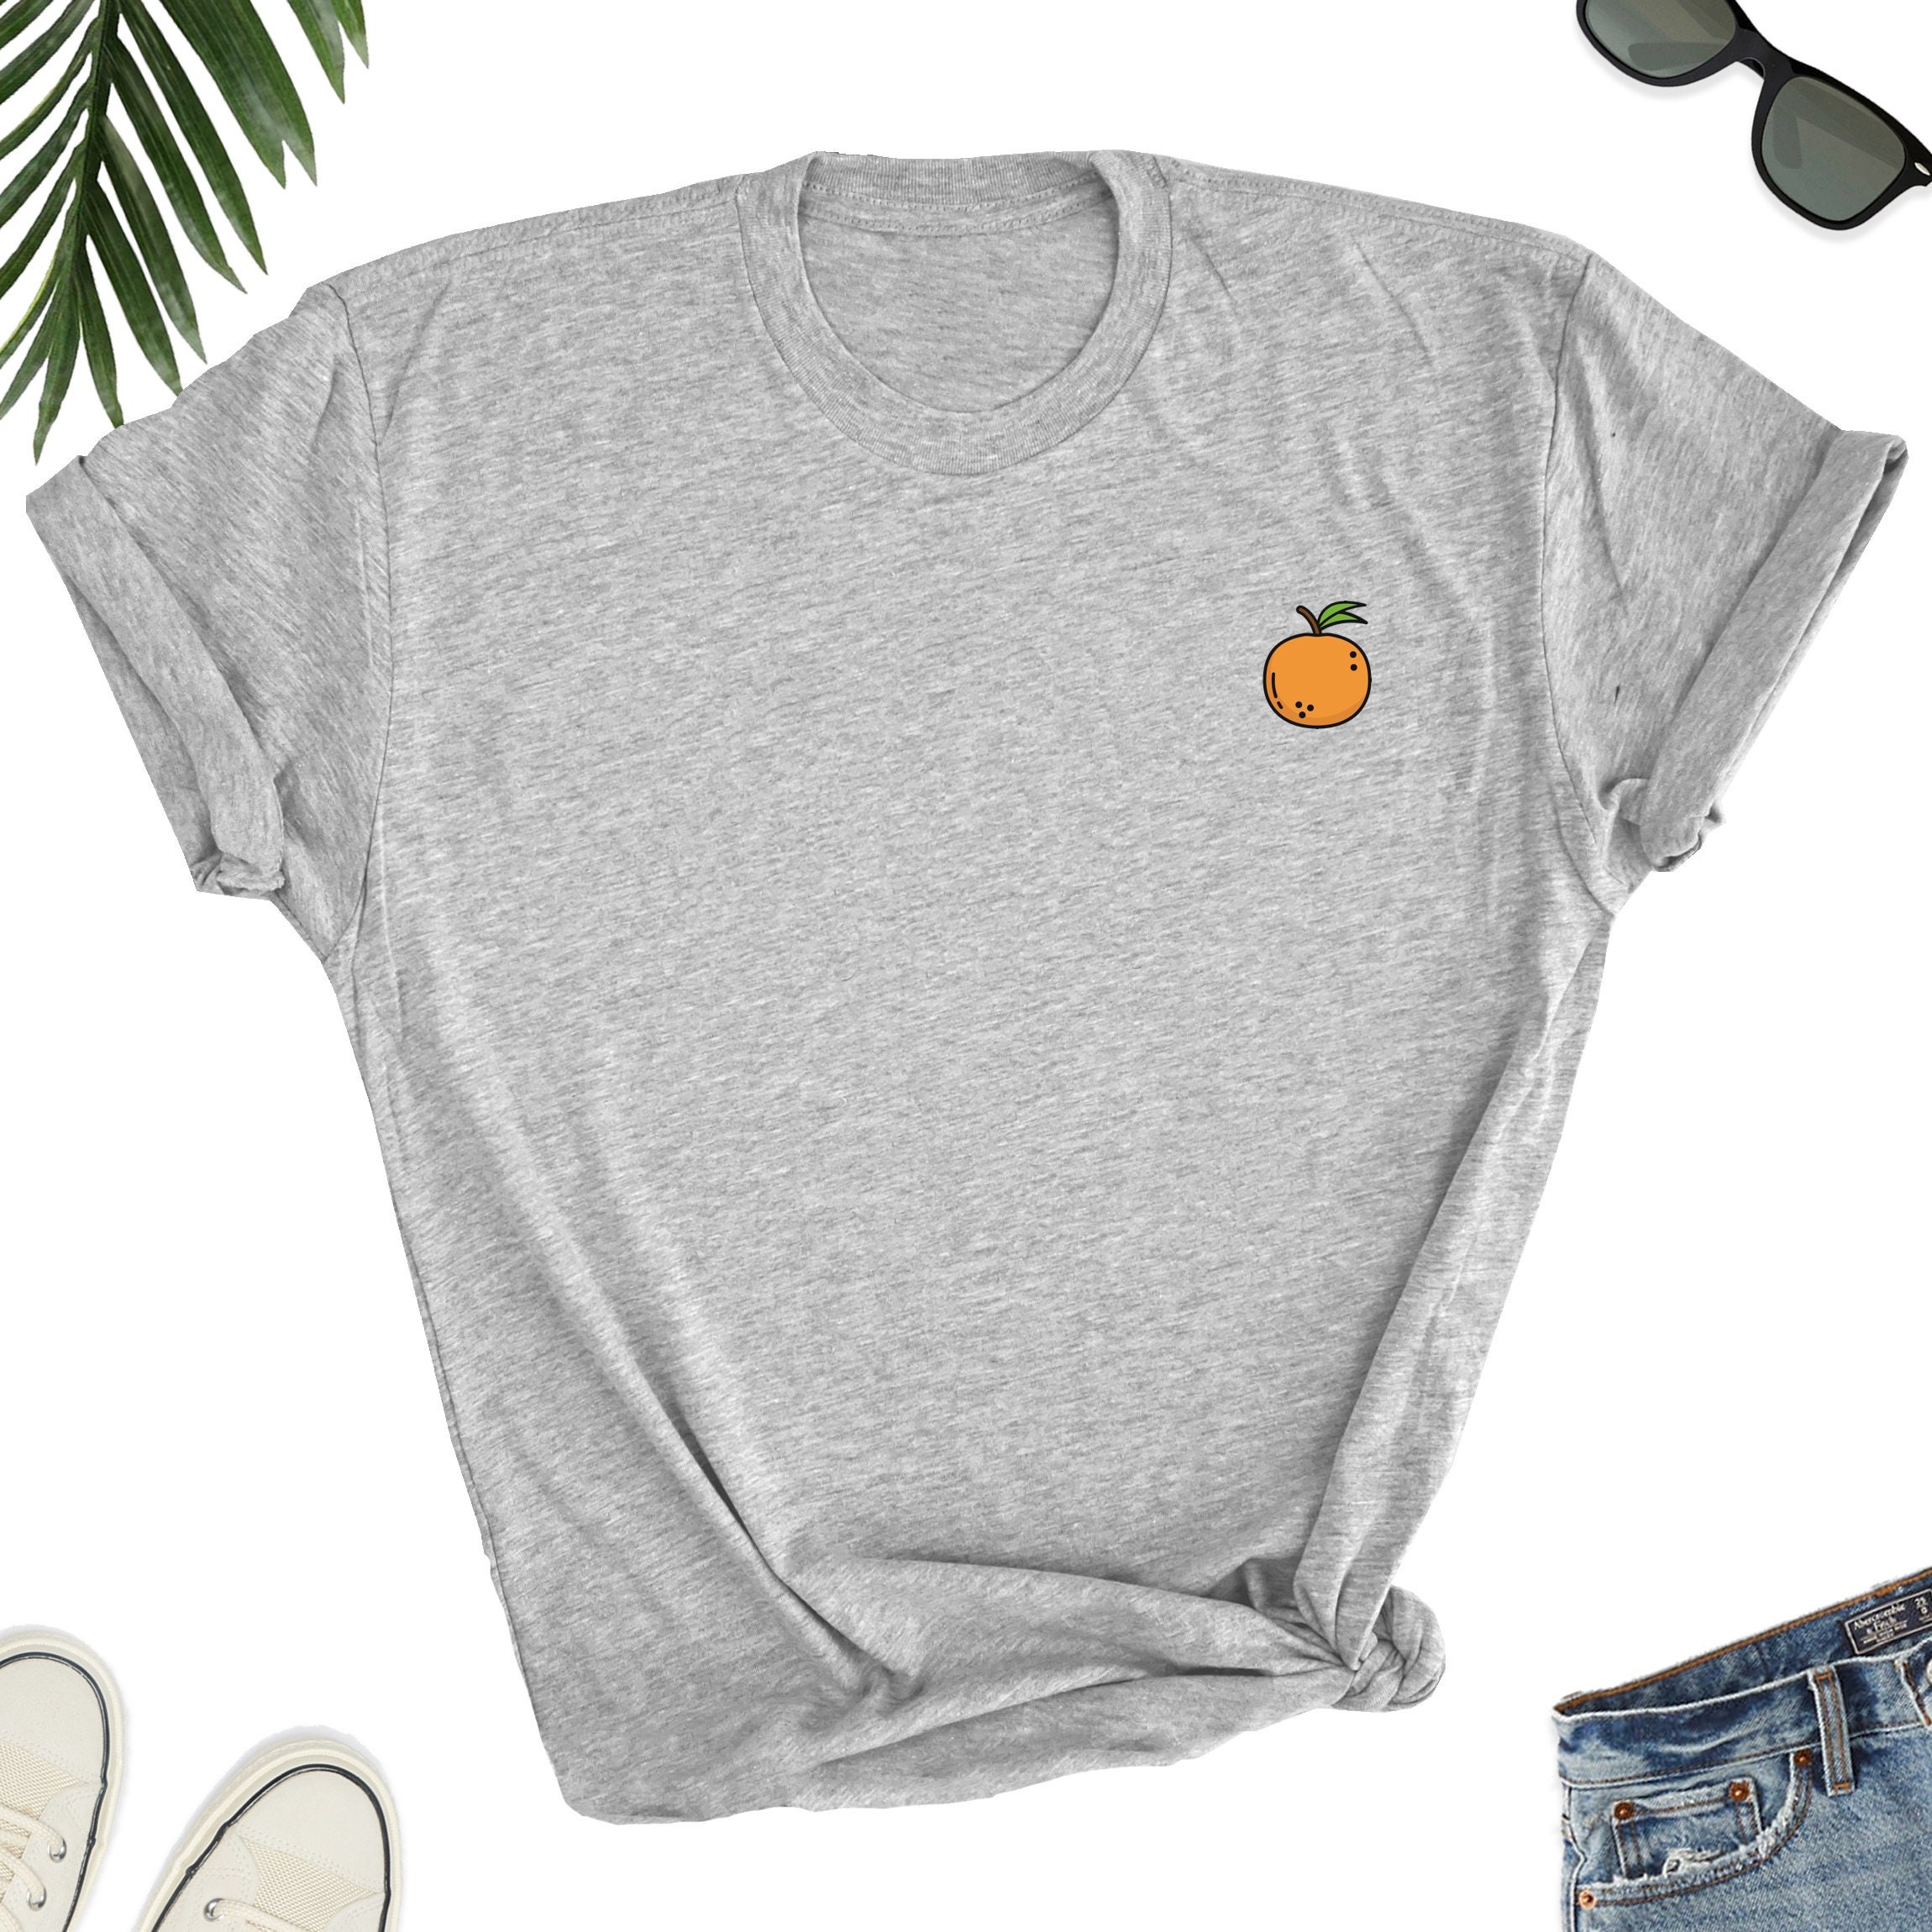 Orange Shirt / Fruit Shirt / Orange minimalist shirt / Orange | Etsy